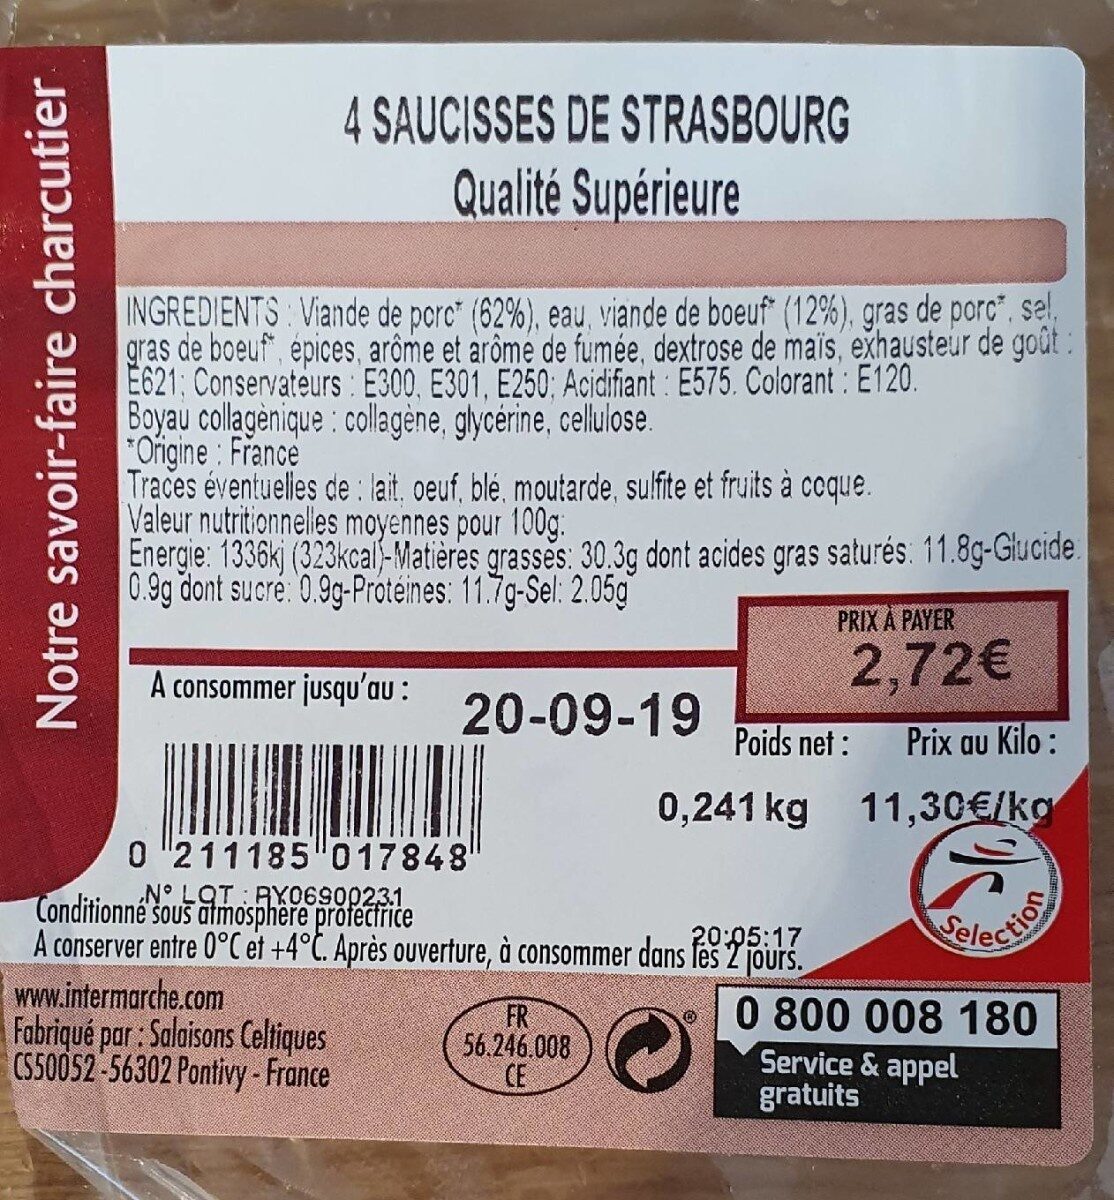 Saucisse de Strasbourg - Product - fr